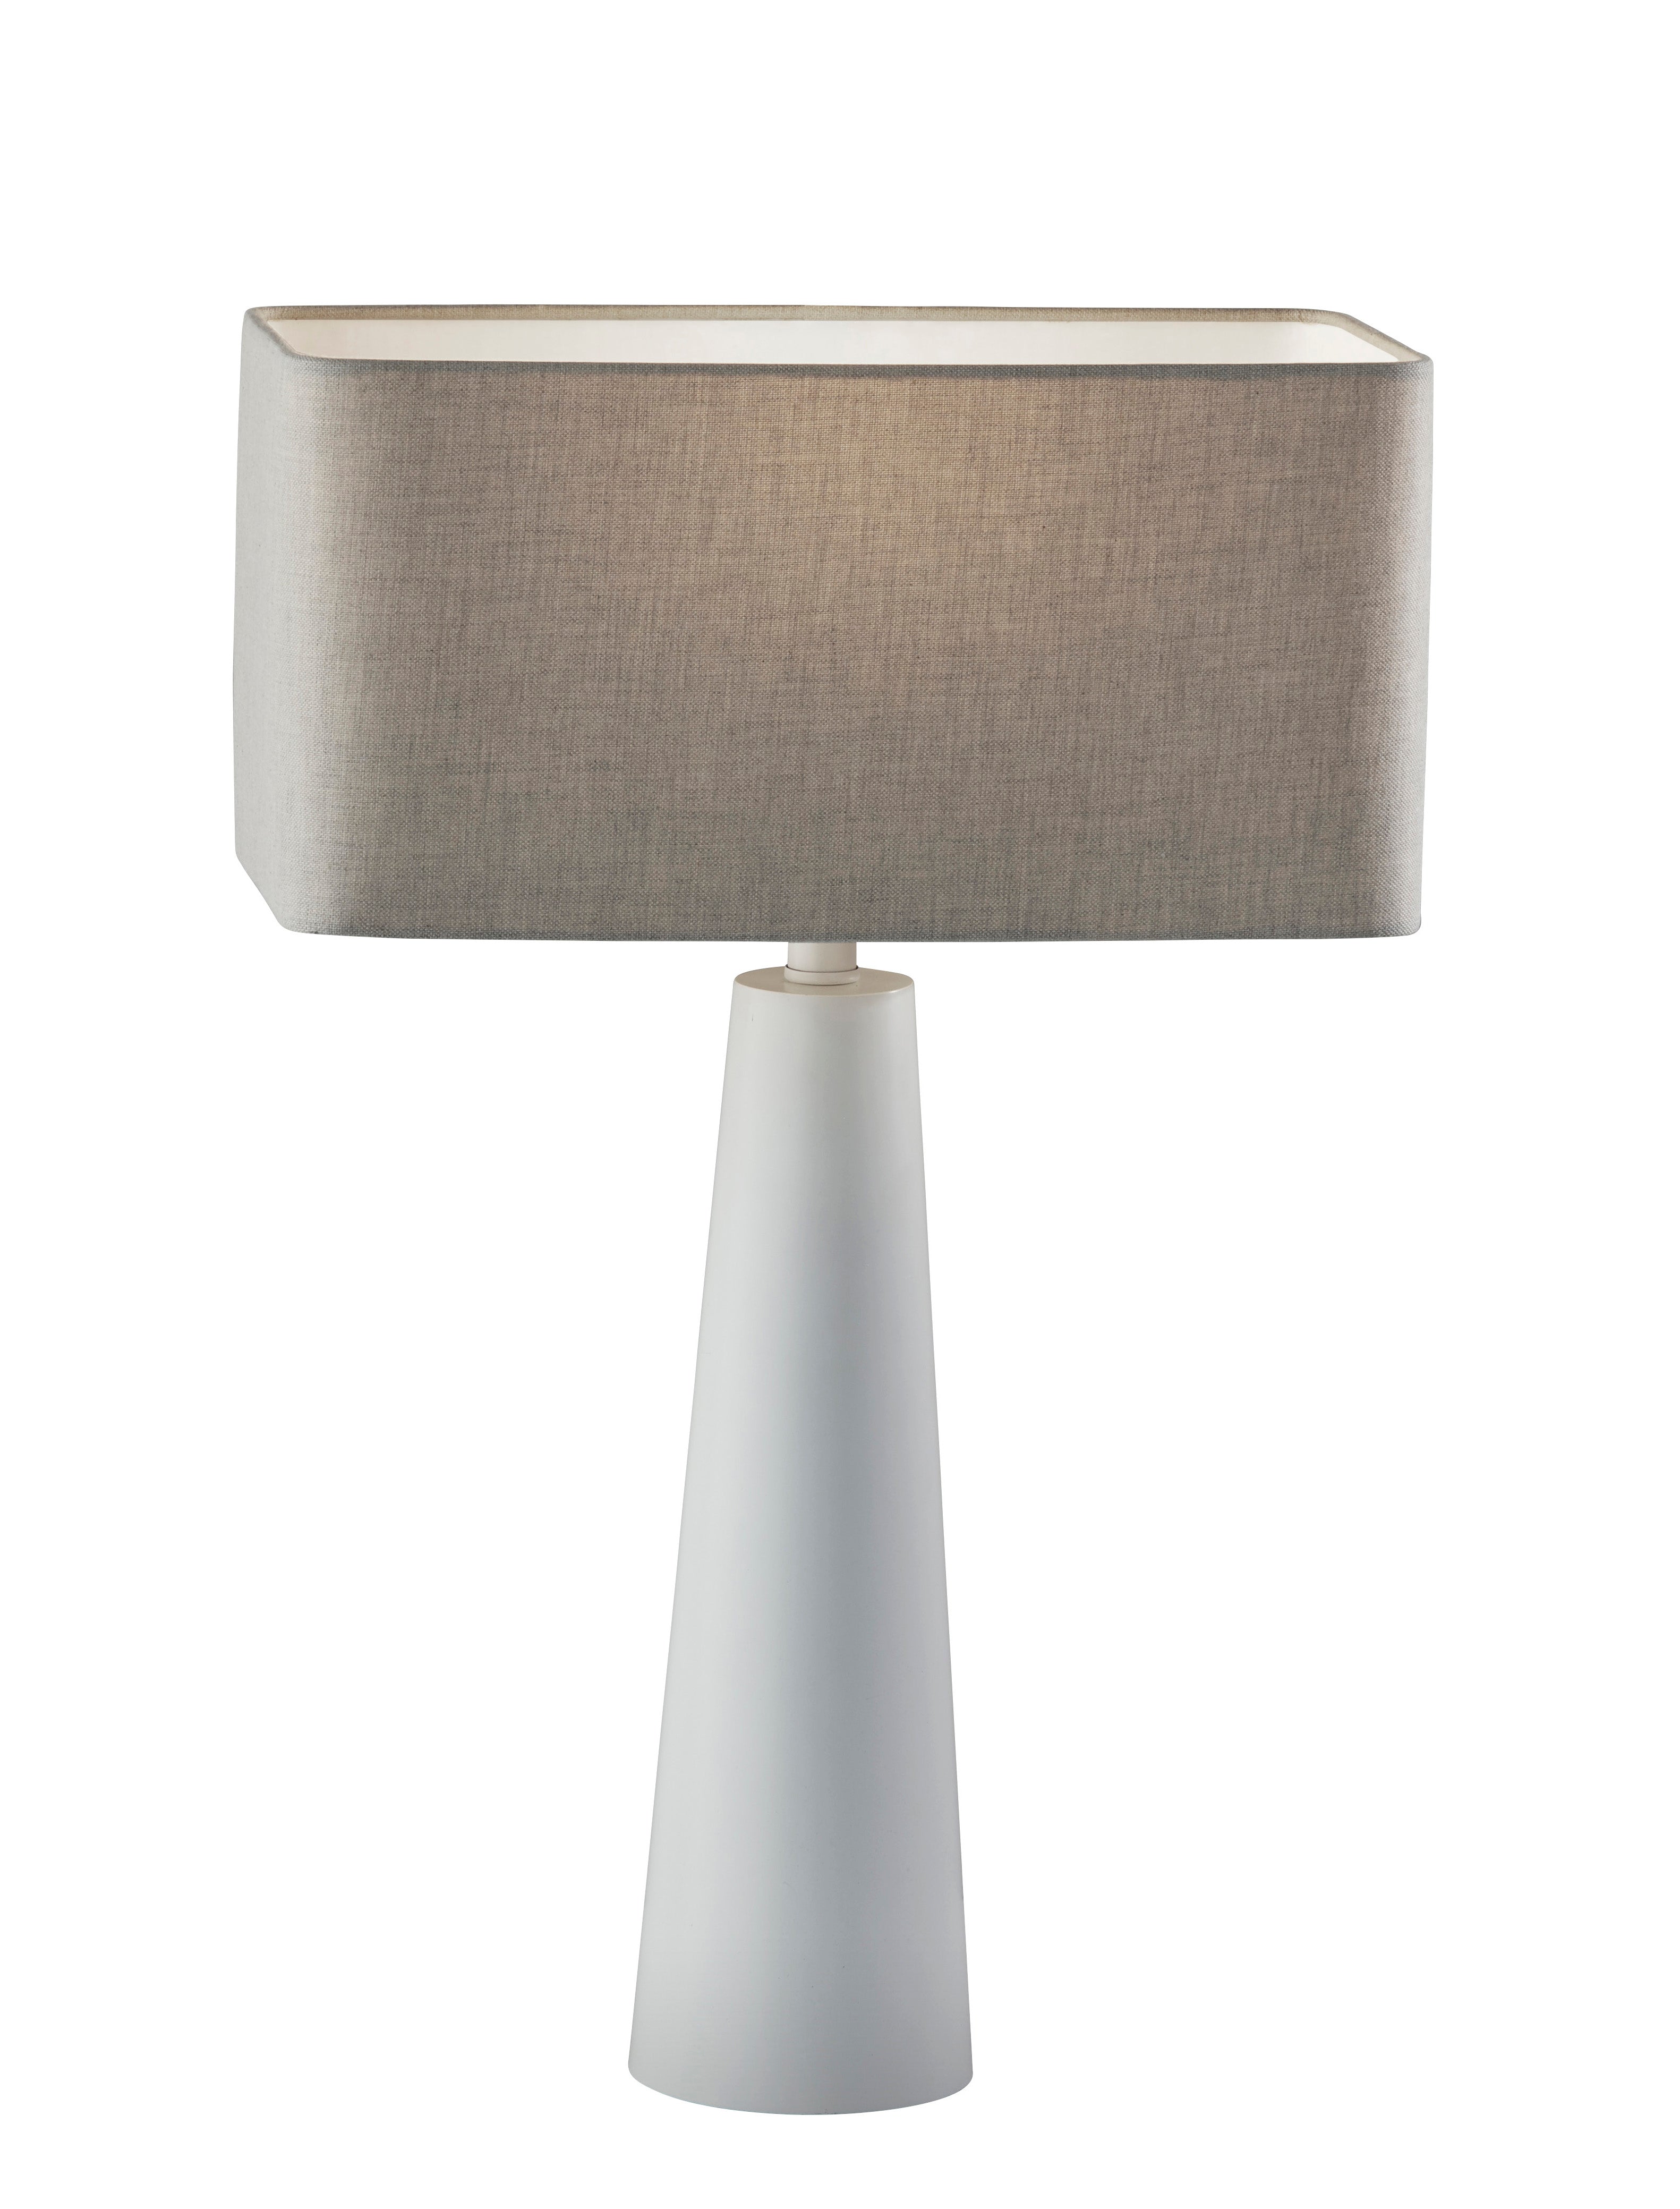 LILLIAN Lampe sur table Blanc - 1505-02 | ADESSO